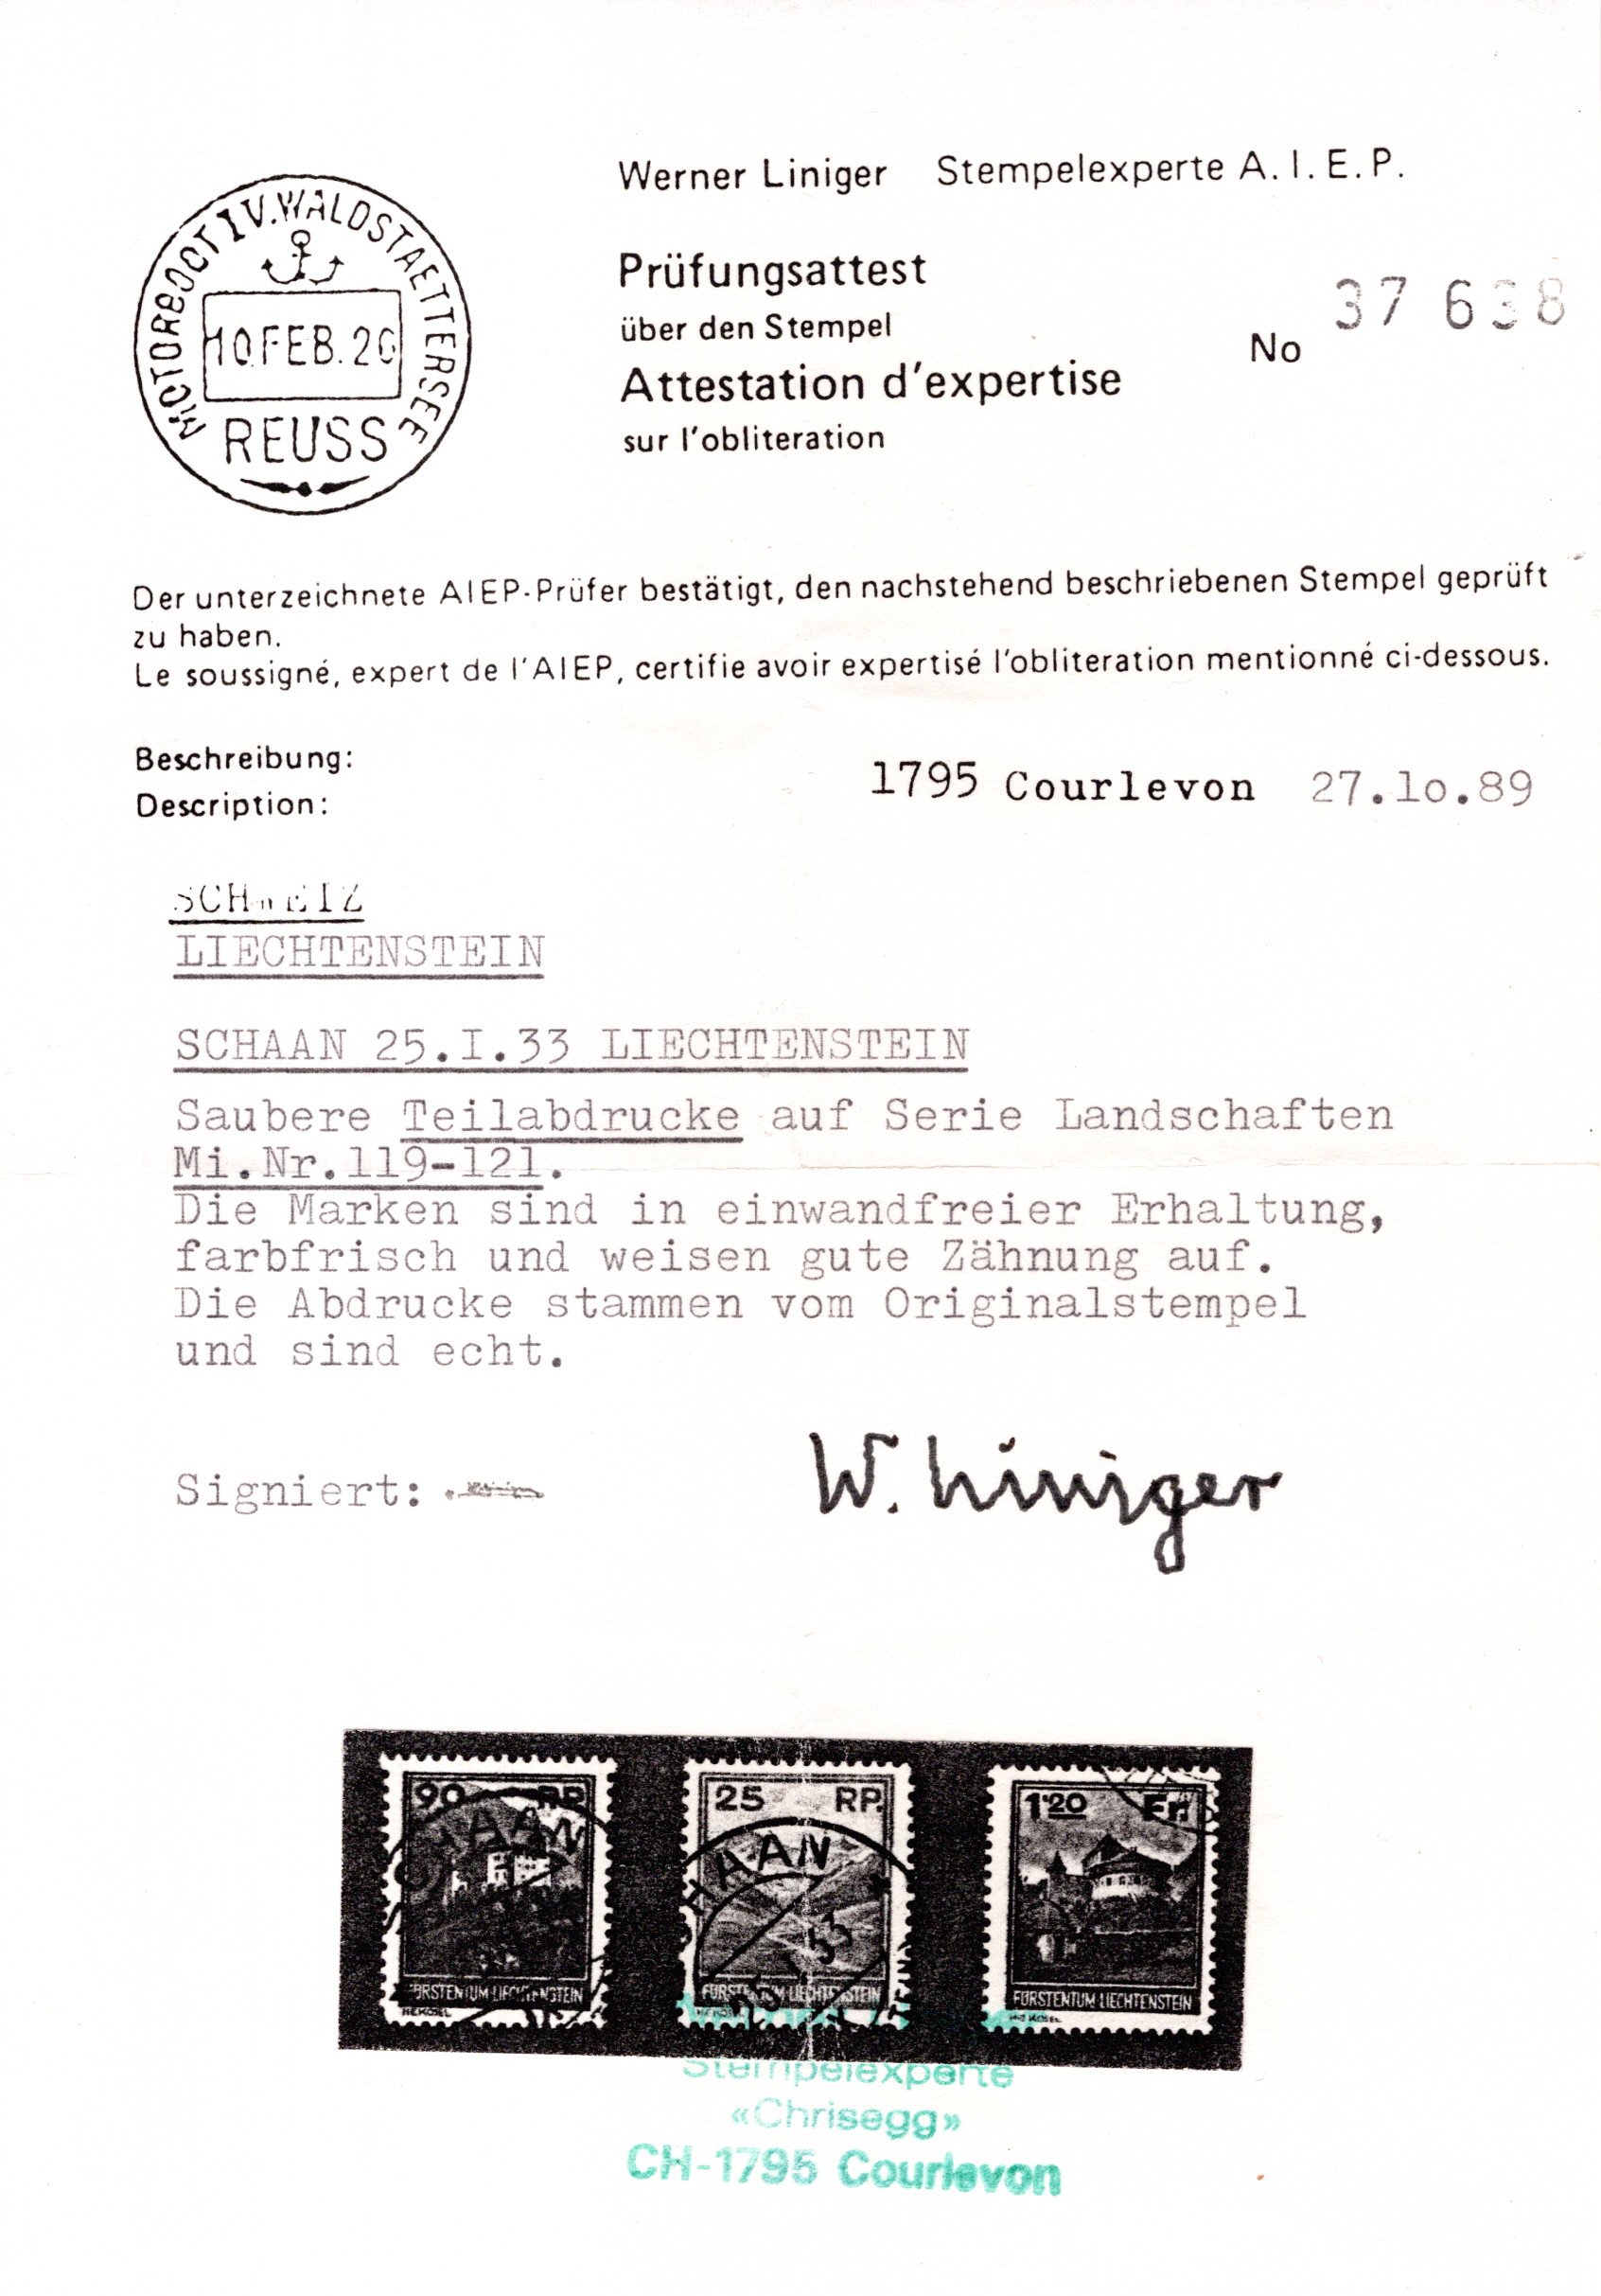 Lot 993 - europe Liechtenstein -  Georg Bühler Briefmarken Auktionen GmbH Georg Bühler 336 auction